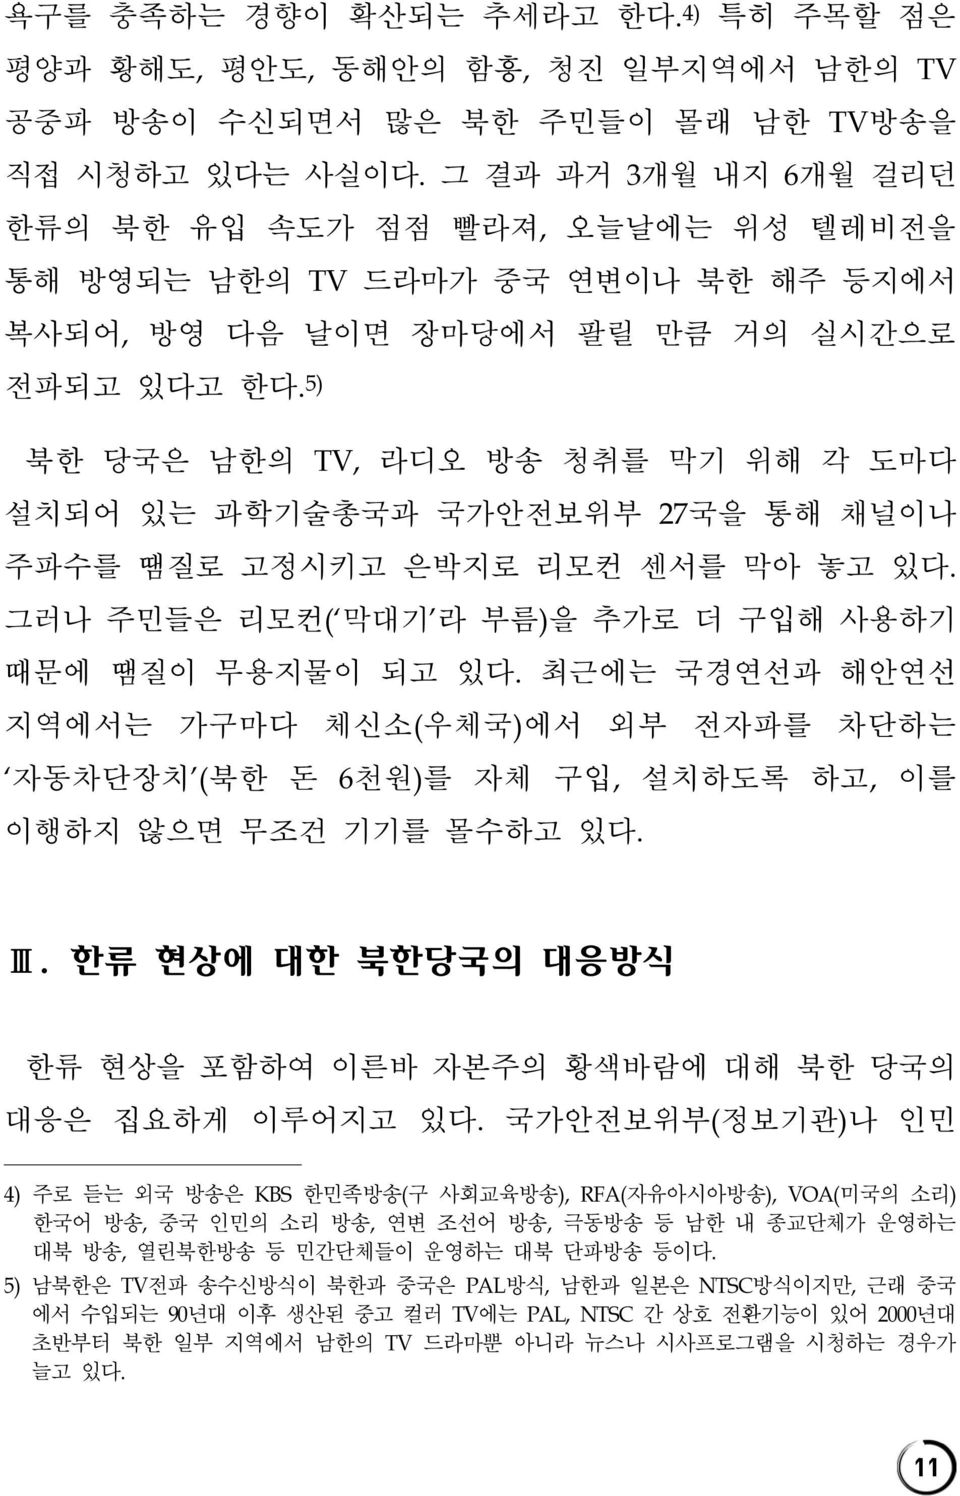 5) 북한 당국은 남한의 TV, 라디오 방송 청취를 막기 위해 각 도마다 설치되어 있는 과학기술총국과 국가안전보위부 27국을 통해 채널이나 주파수를 땜질로 고정시키고 은박지로 리모컨 센서를 막아 놓고 있다. 그러나 주민들은 리모컨( 막대기 라 부름)을 추가로 더 구입해 사용하기 때문에 땜질이 무용지물이 되고 있다.